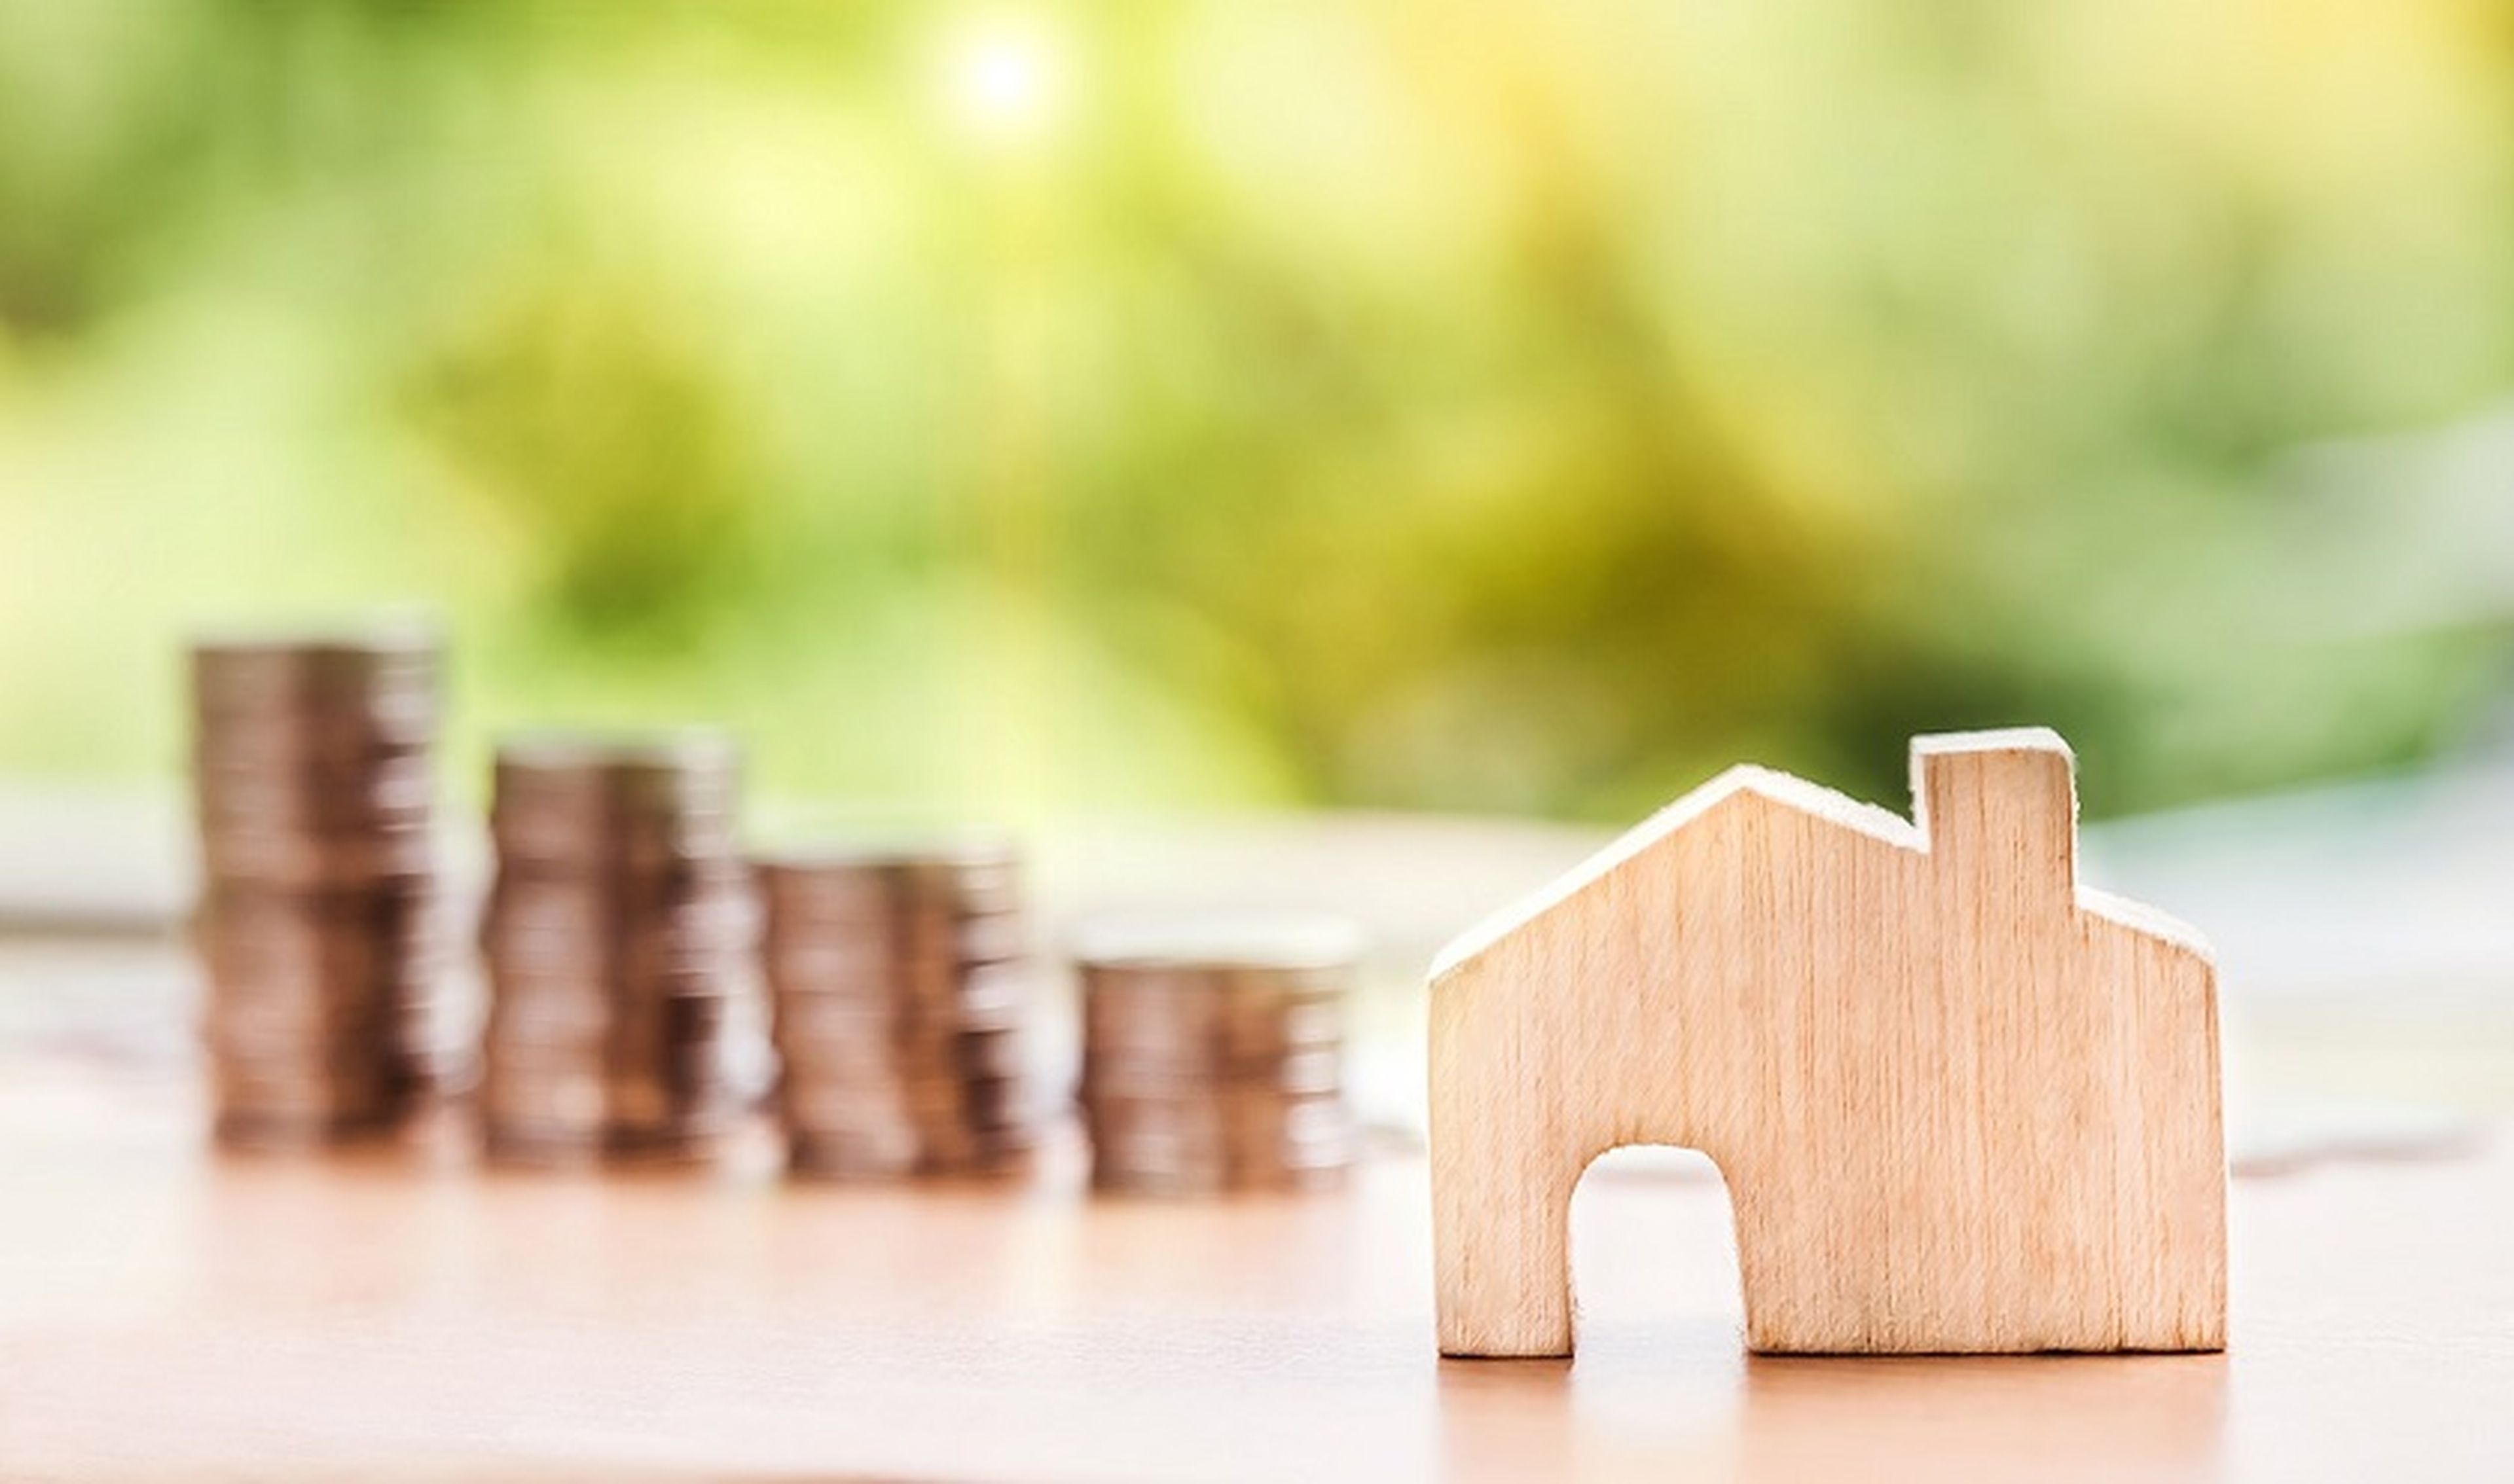 Comprar o alquilar casa, qué es más rentable